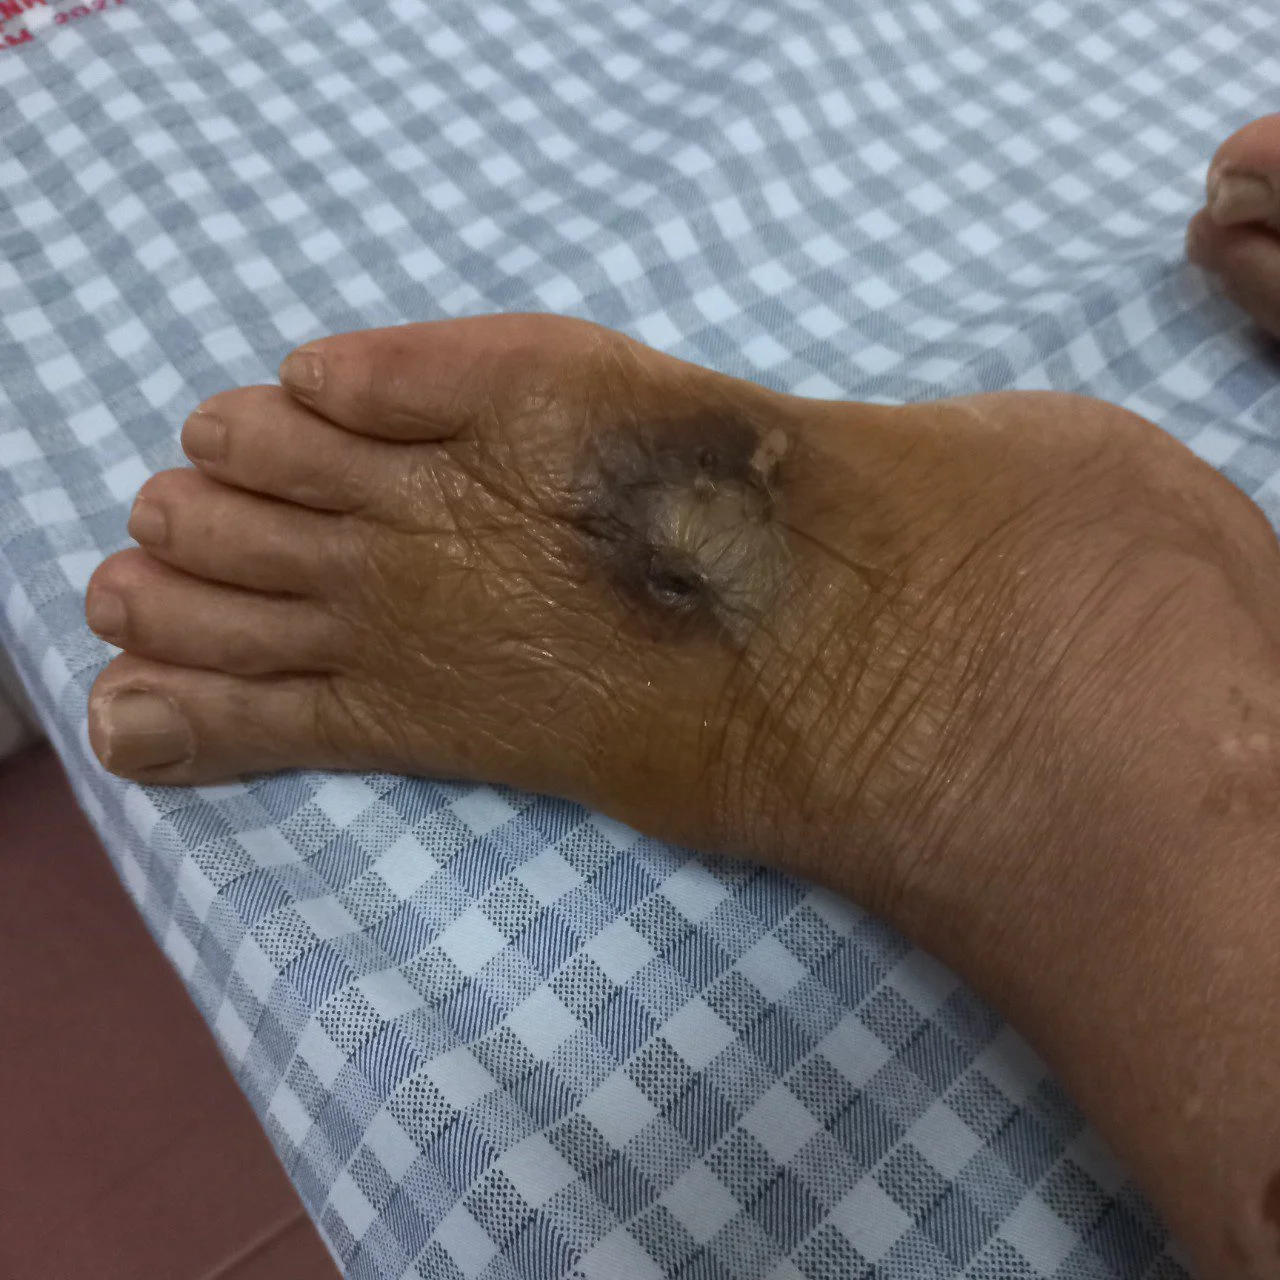 Nguy hiểm khi chuột cắn - 1 bệnh nhân hoại tử ướt bàn chân